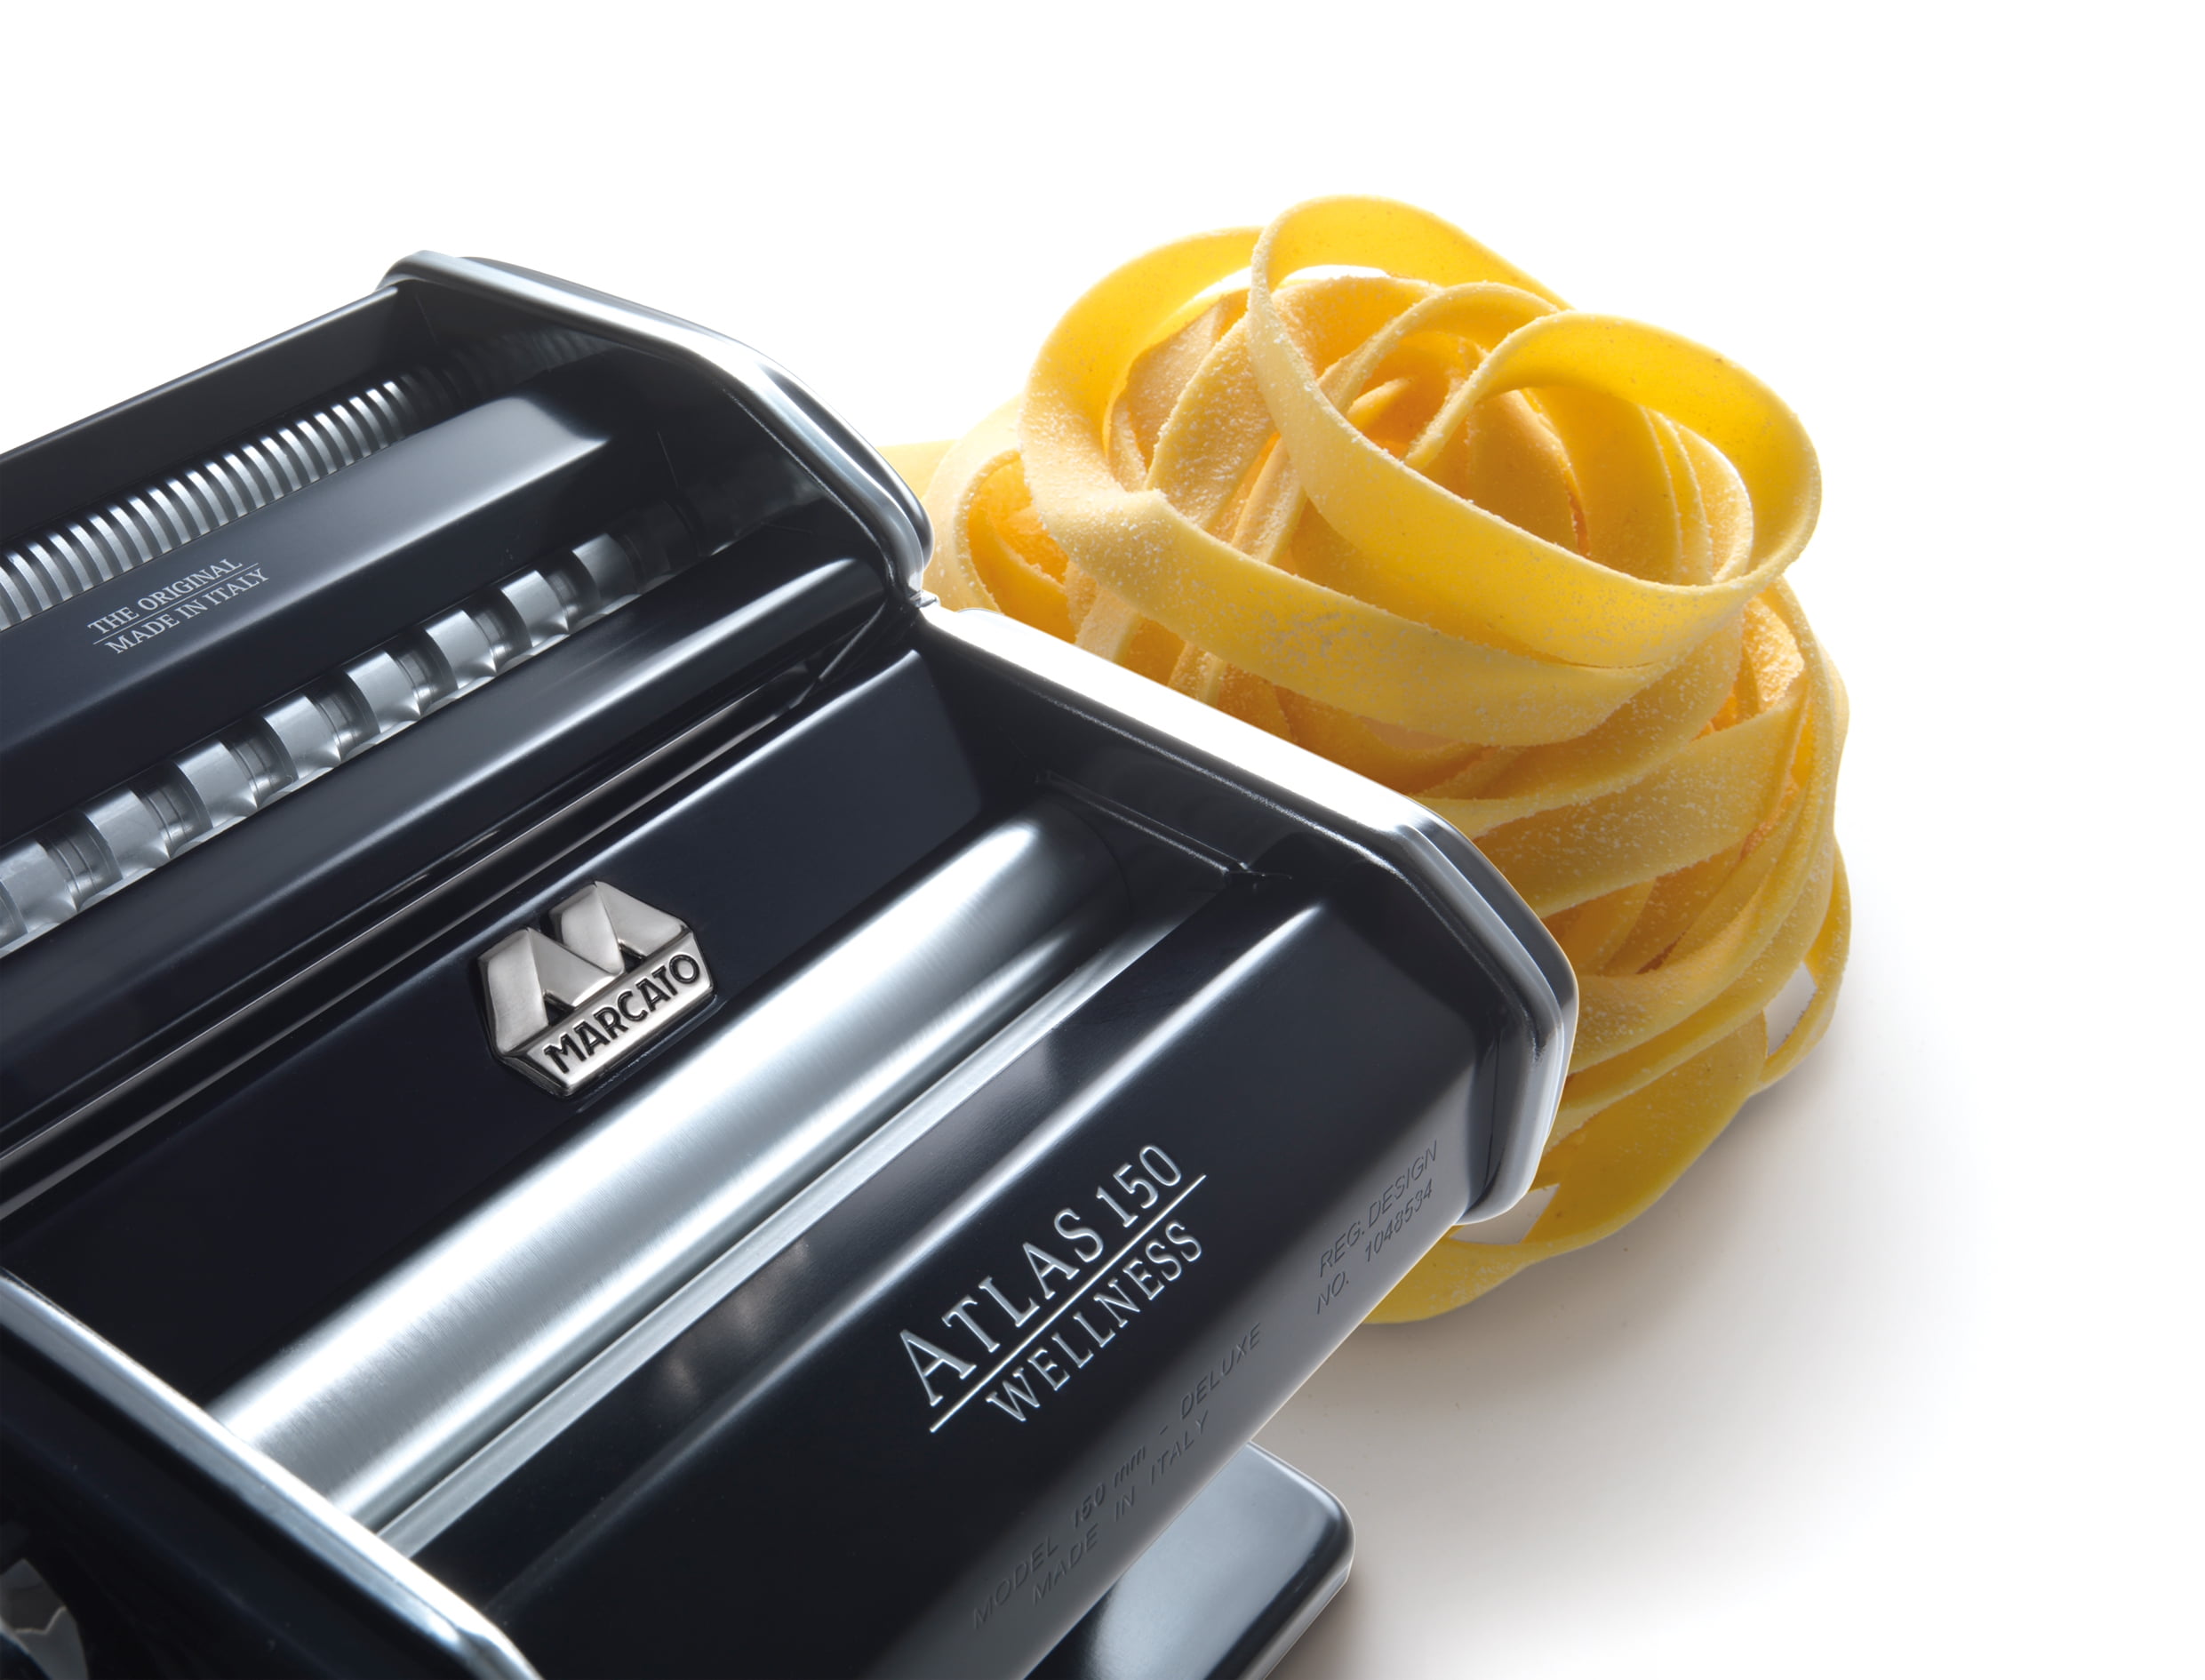 Marcato Atlas 150 Pasta Machine Linguine Attachment - Bear Claw